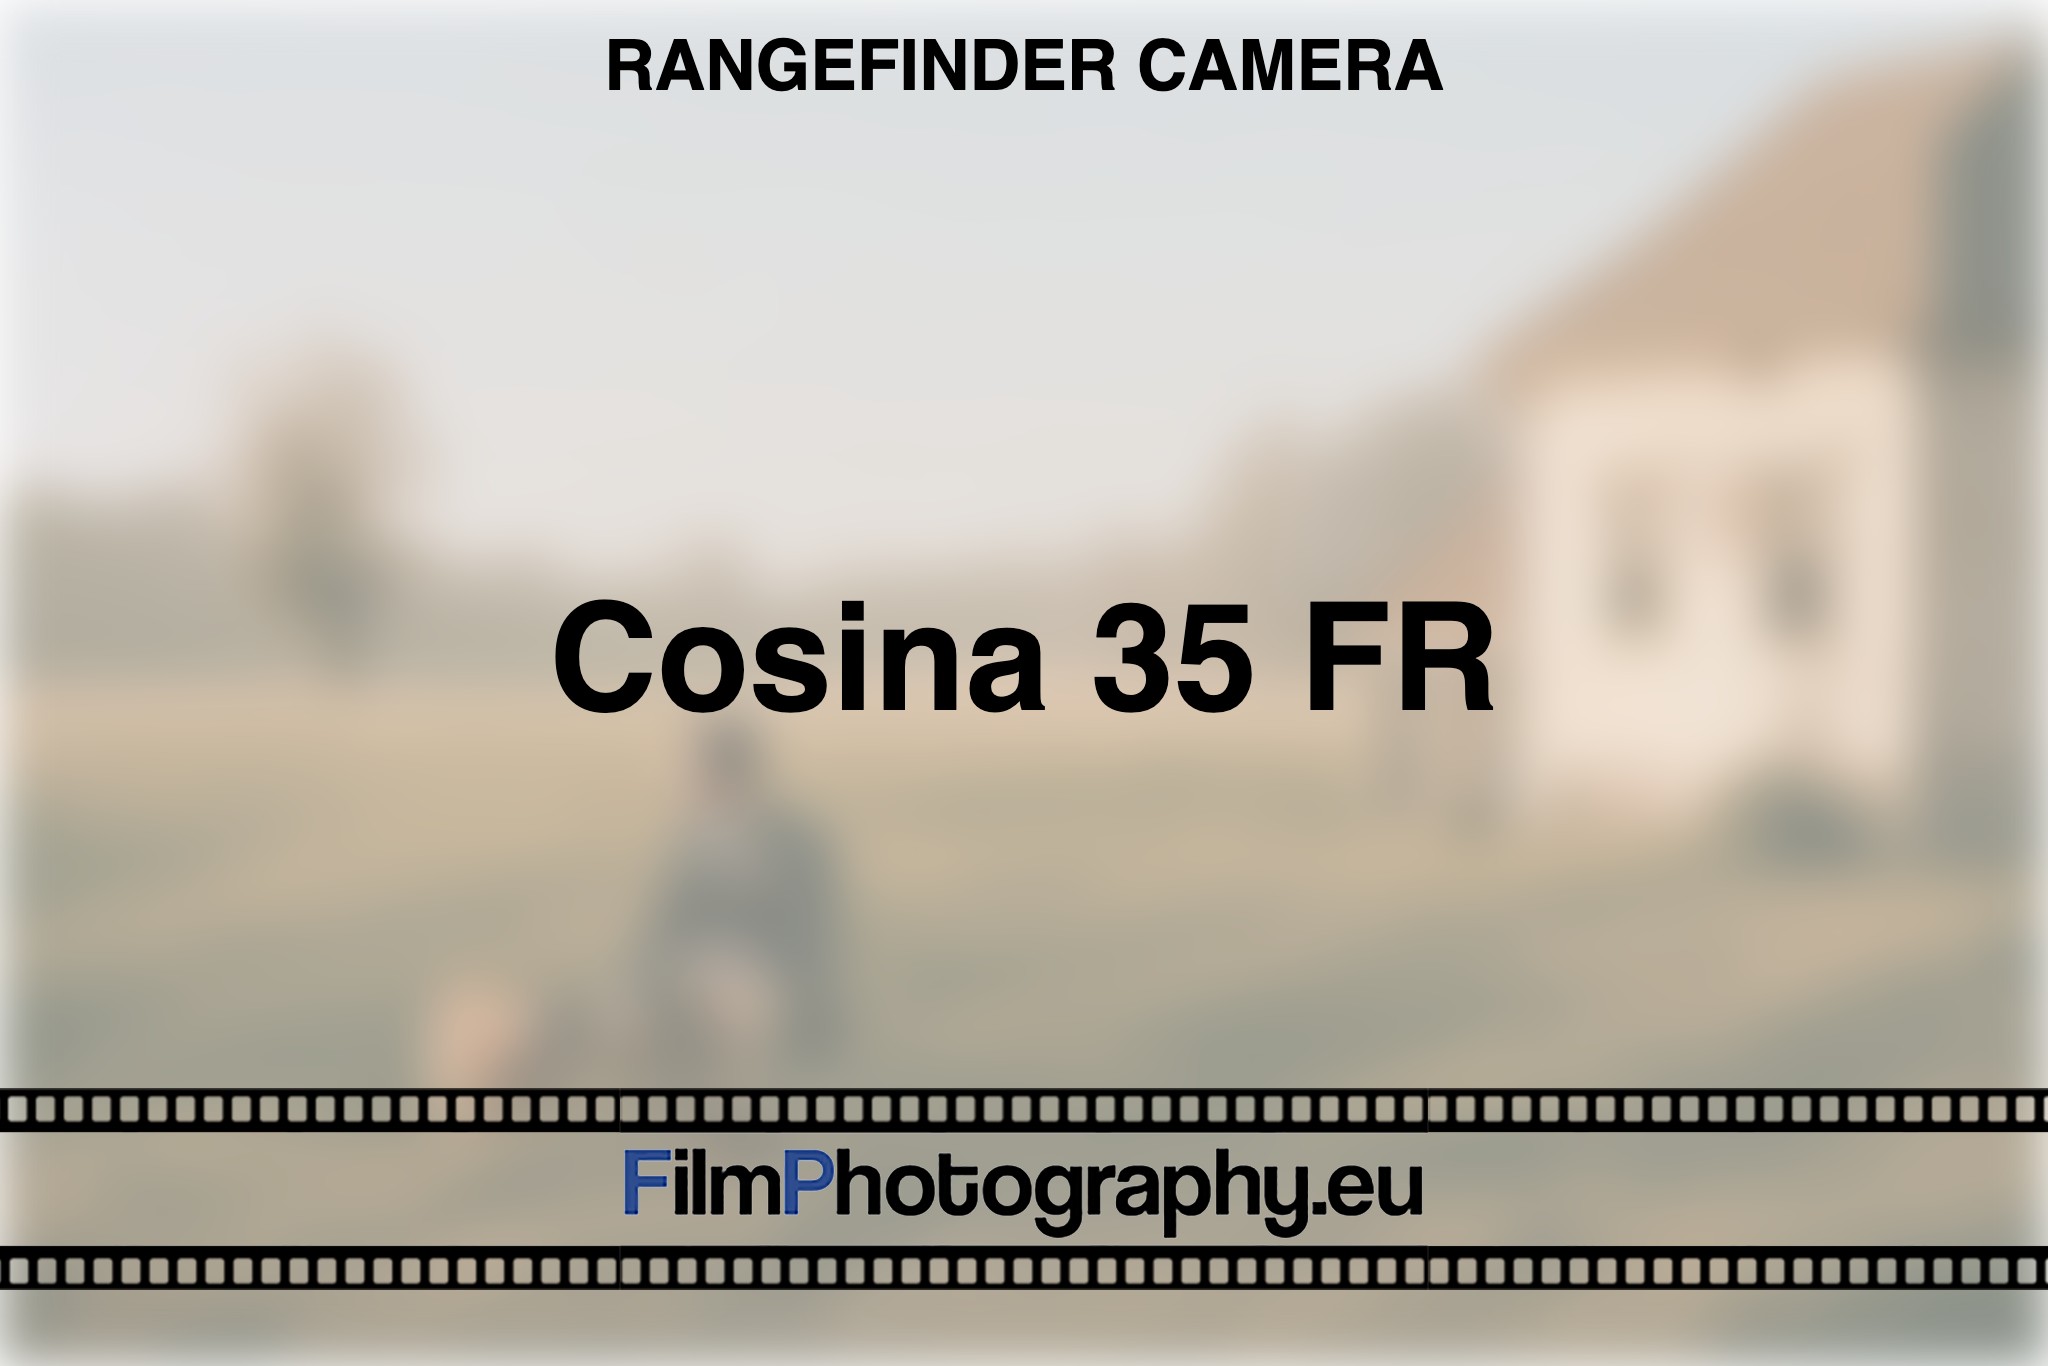 cosina-35-fr-rangefinder-camera-bnv